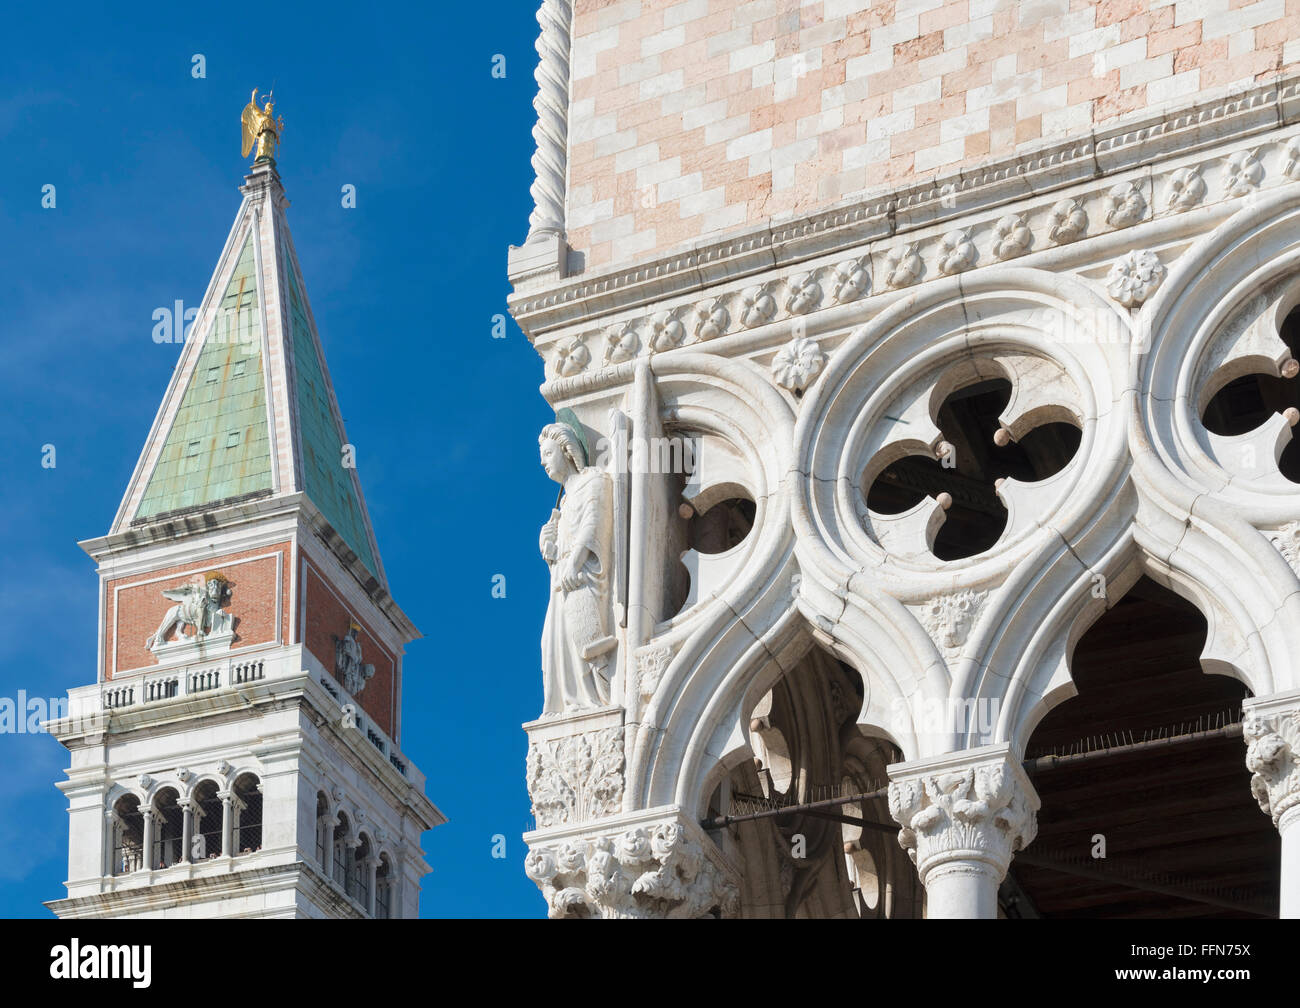 El Campanile de San Marcos torre campanario de la Iglesia de San Marcos, con el Palazzo Ducale o Palacio Ducal de Venecia, Italia Foto de stock